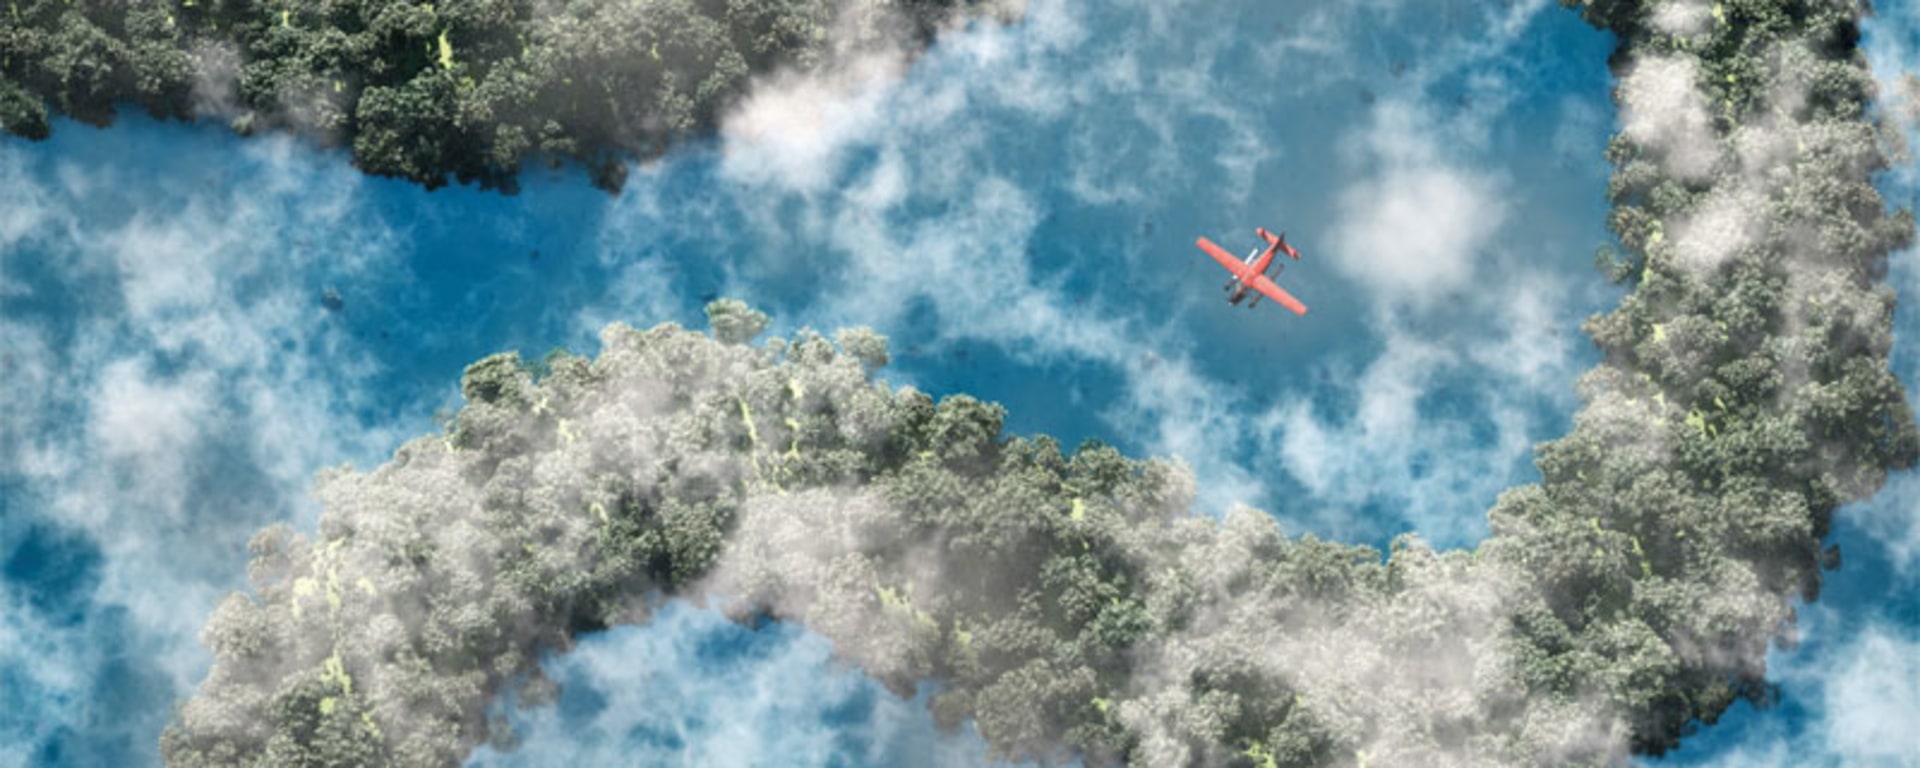 Un aereo che si libra sopra un fiume tortuoso e alberi rigogliosi.